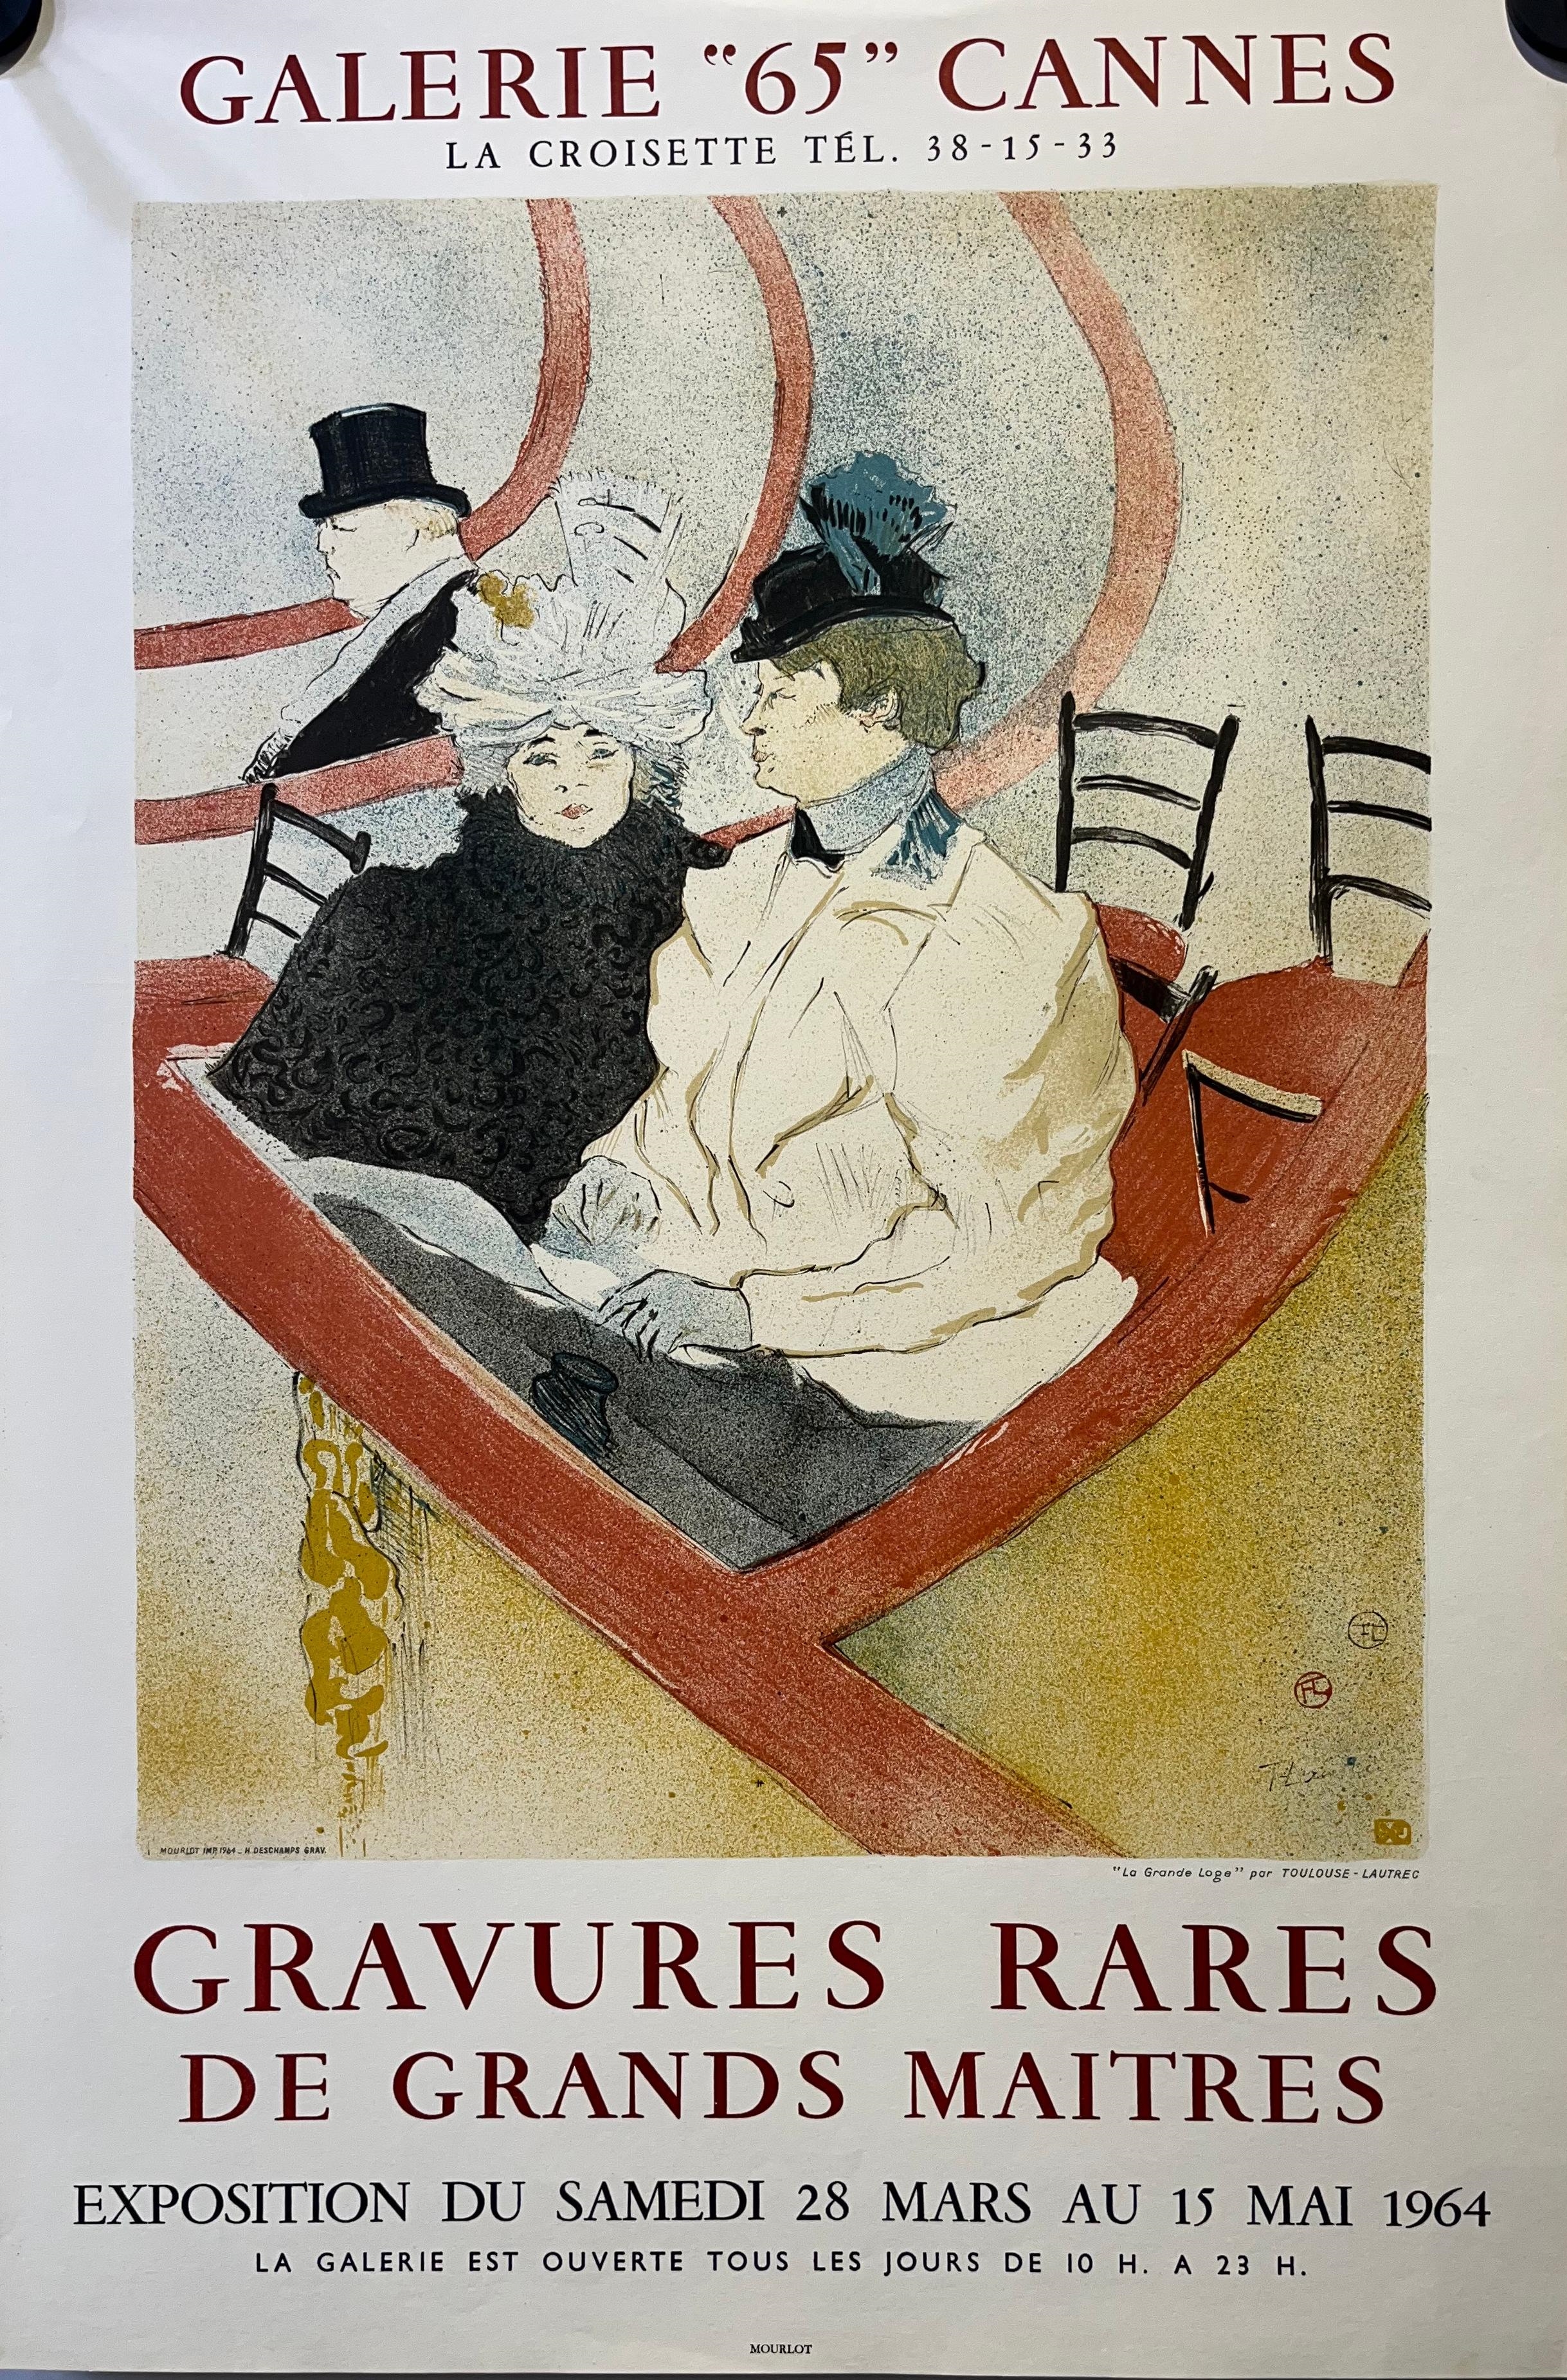 Henri de Toulouse Lautrec, France (1864-1901), Gravures Rares De Grands Maitres, Galerie "65" Cannes, Exposistion Du Samedi 28 Mars Au 15 Mai 1964, Original Exhibition Poster, Colour lithograph